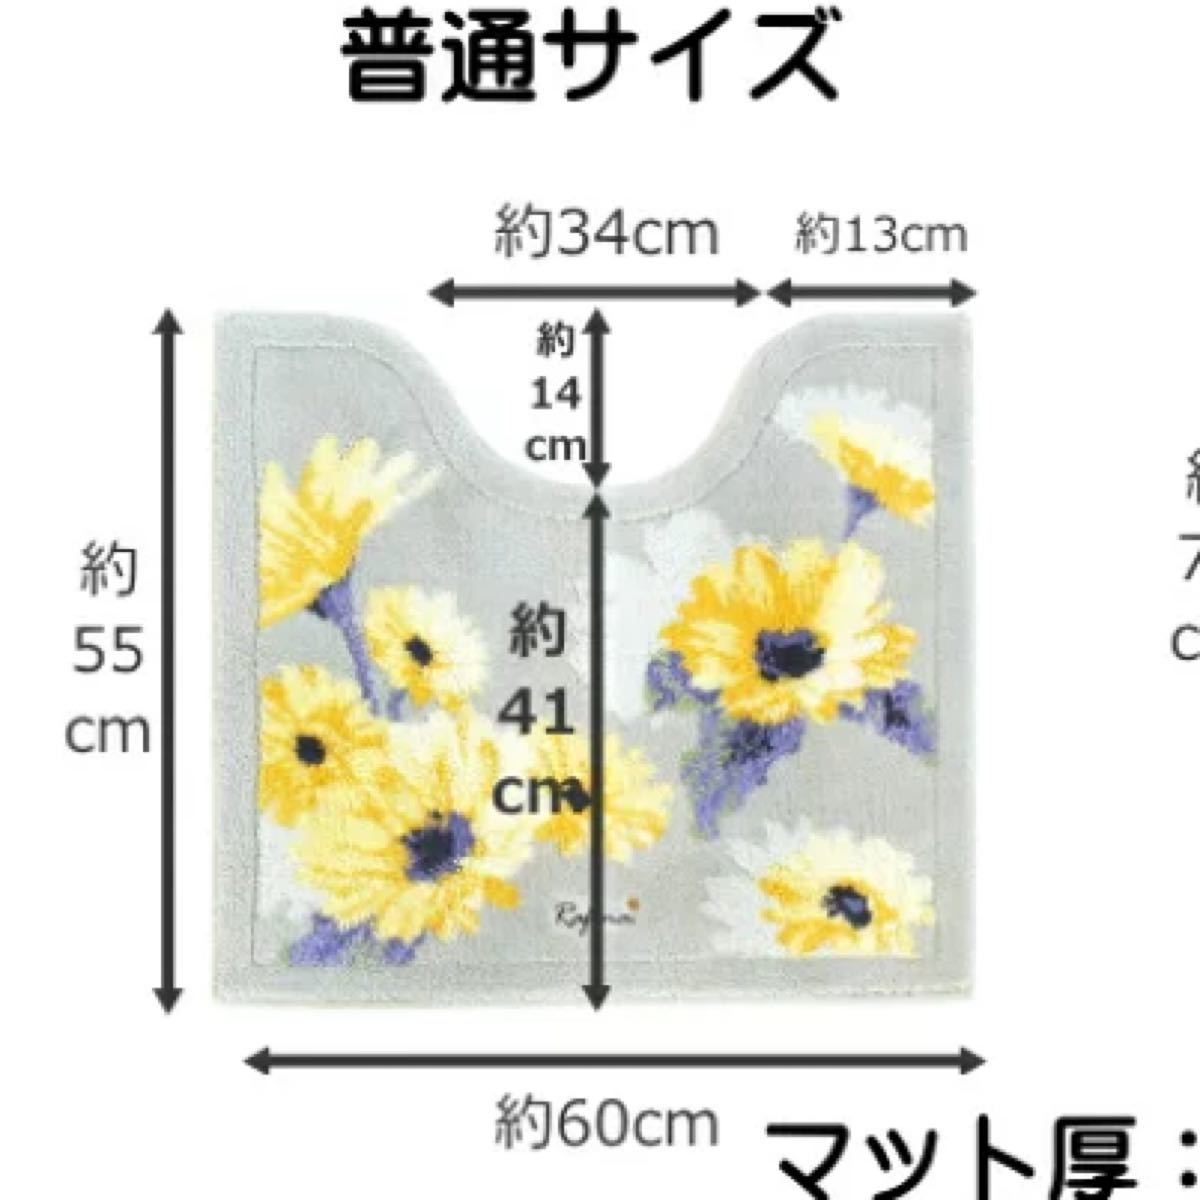 トイレマット 新品 セット 4点 高級 日本製 抗菌 防臭 吸水加工 グレー